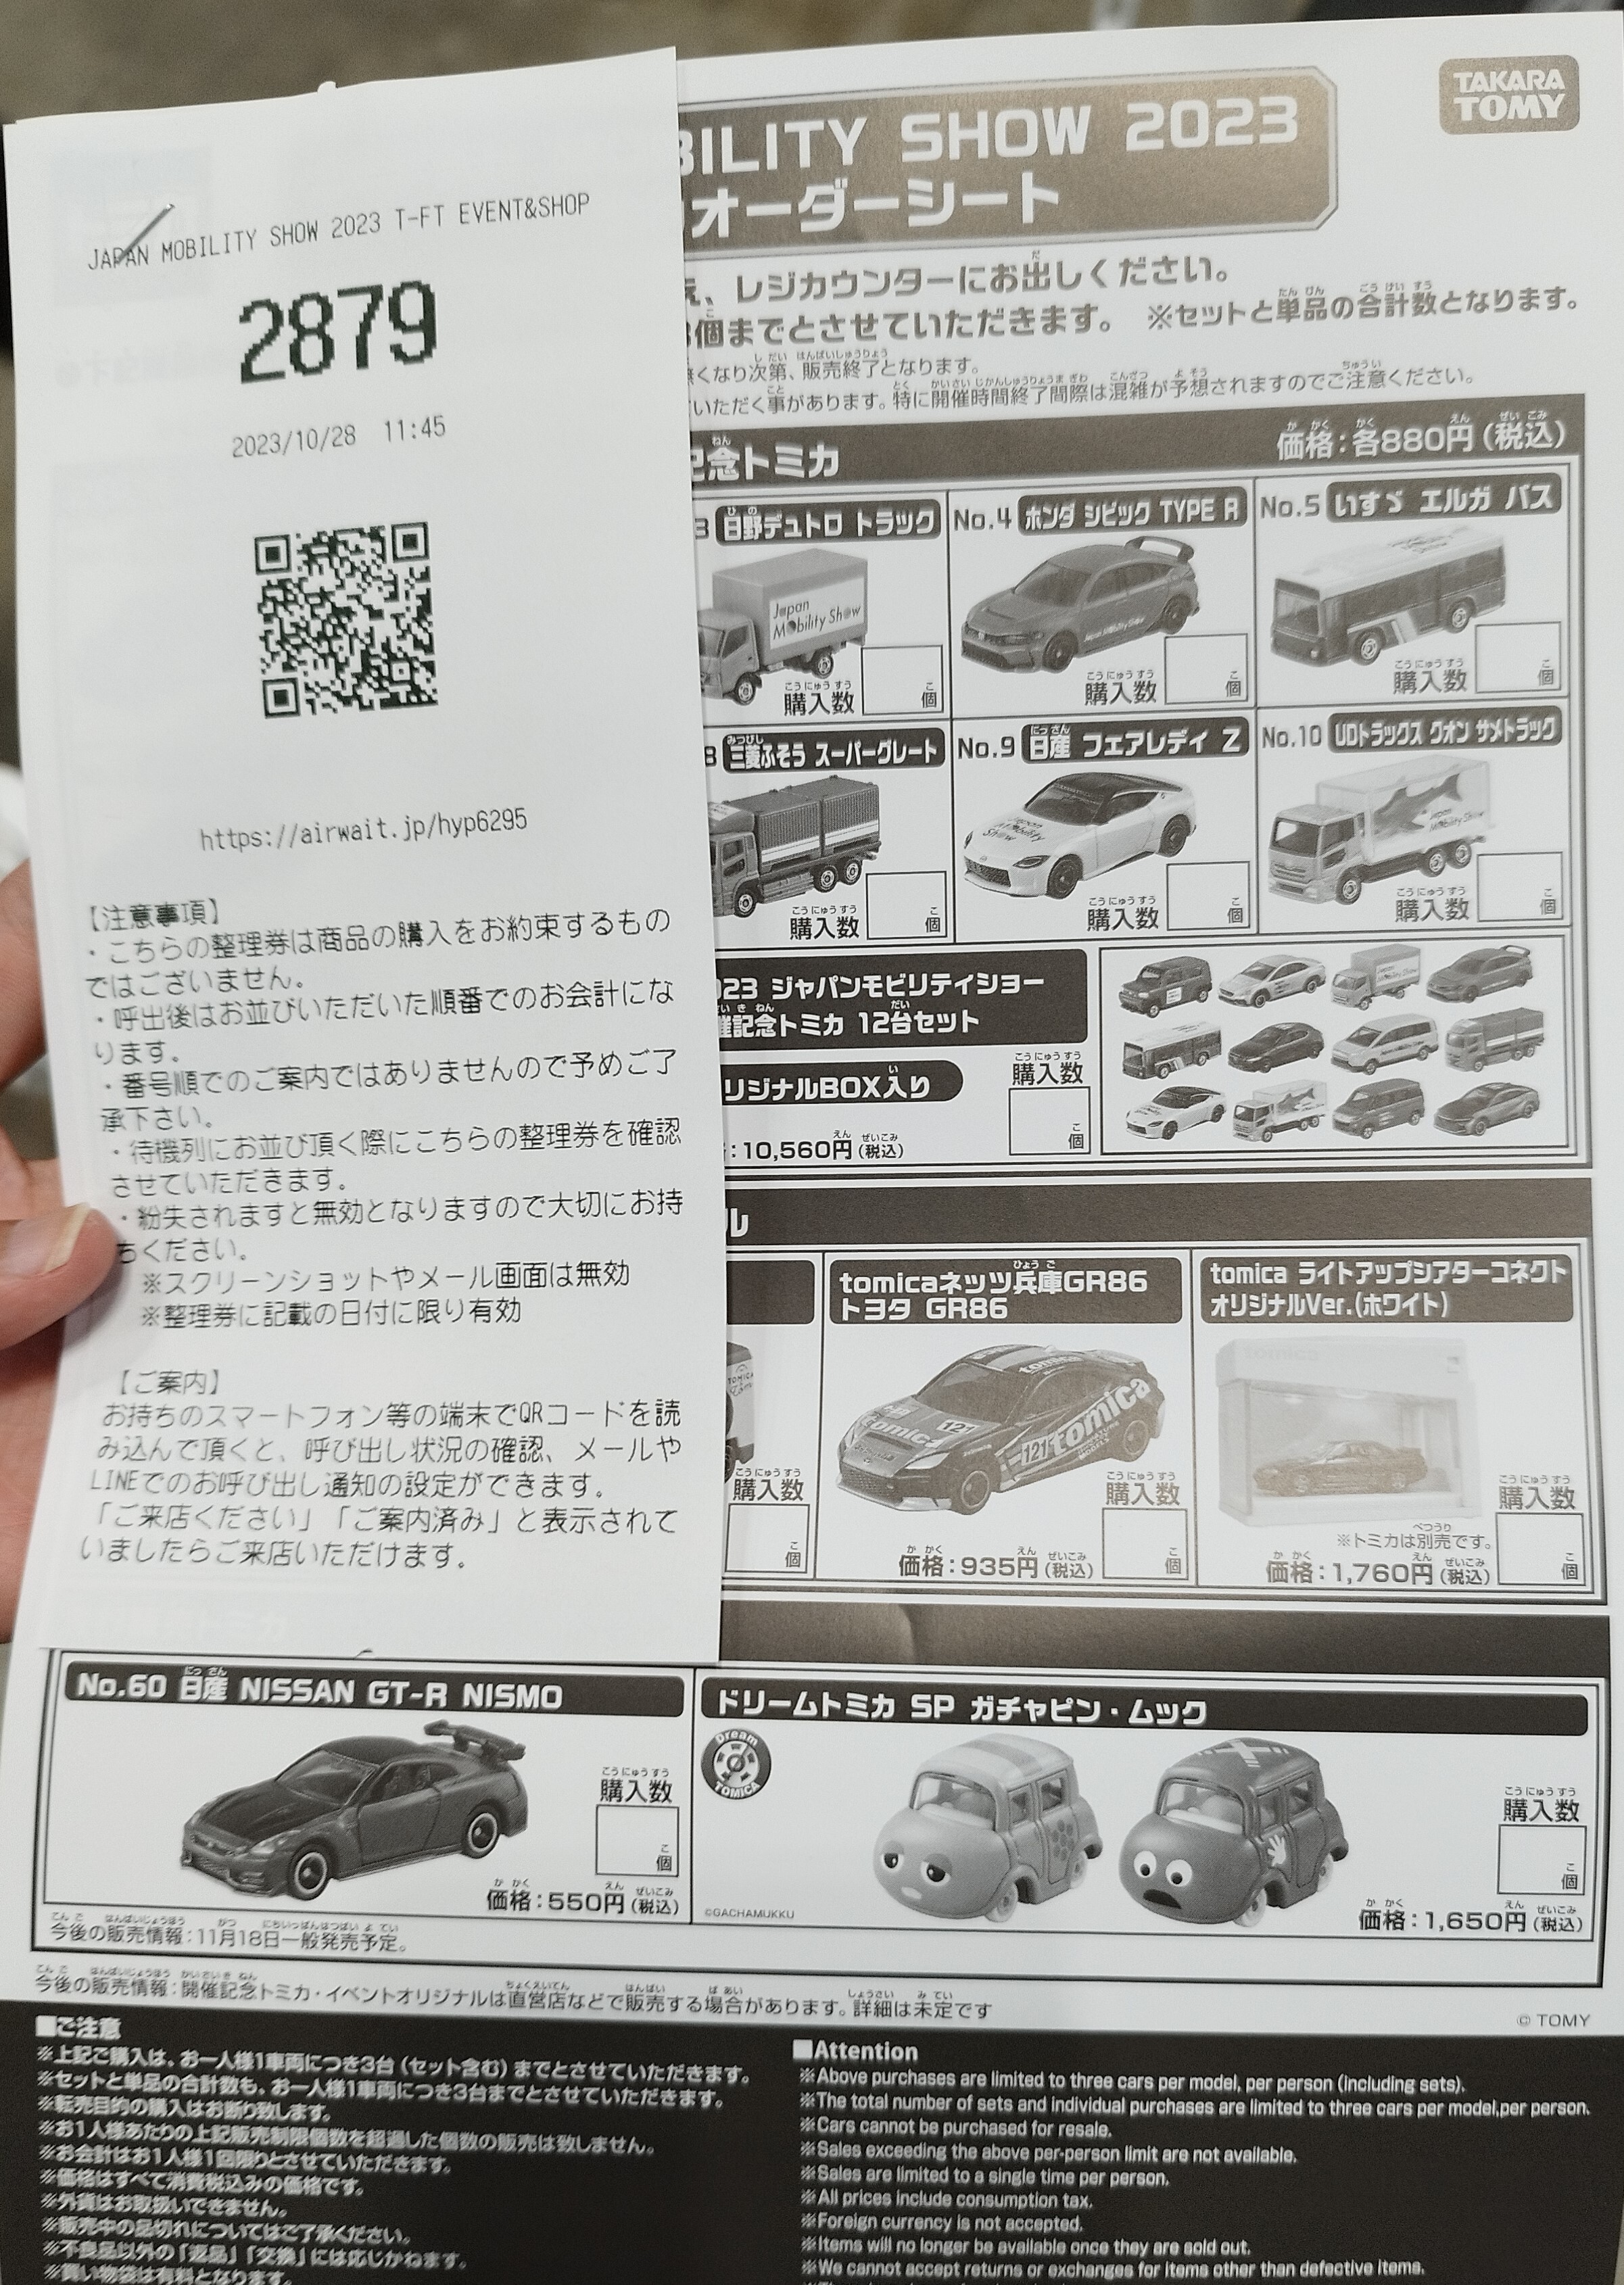 コレクターによる購入方法徹底解説！】Japan Mobility Show 2023開催